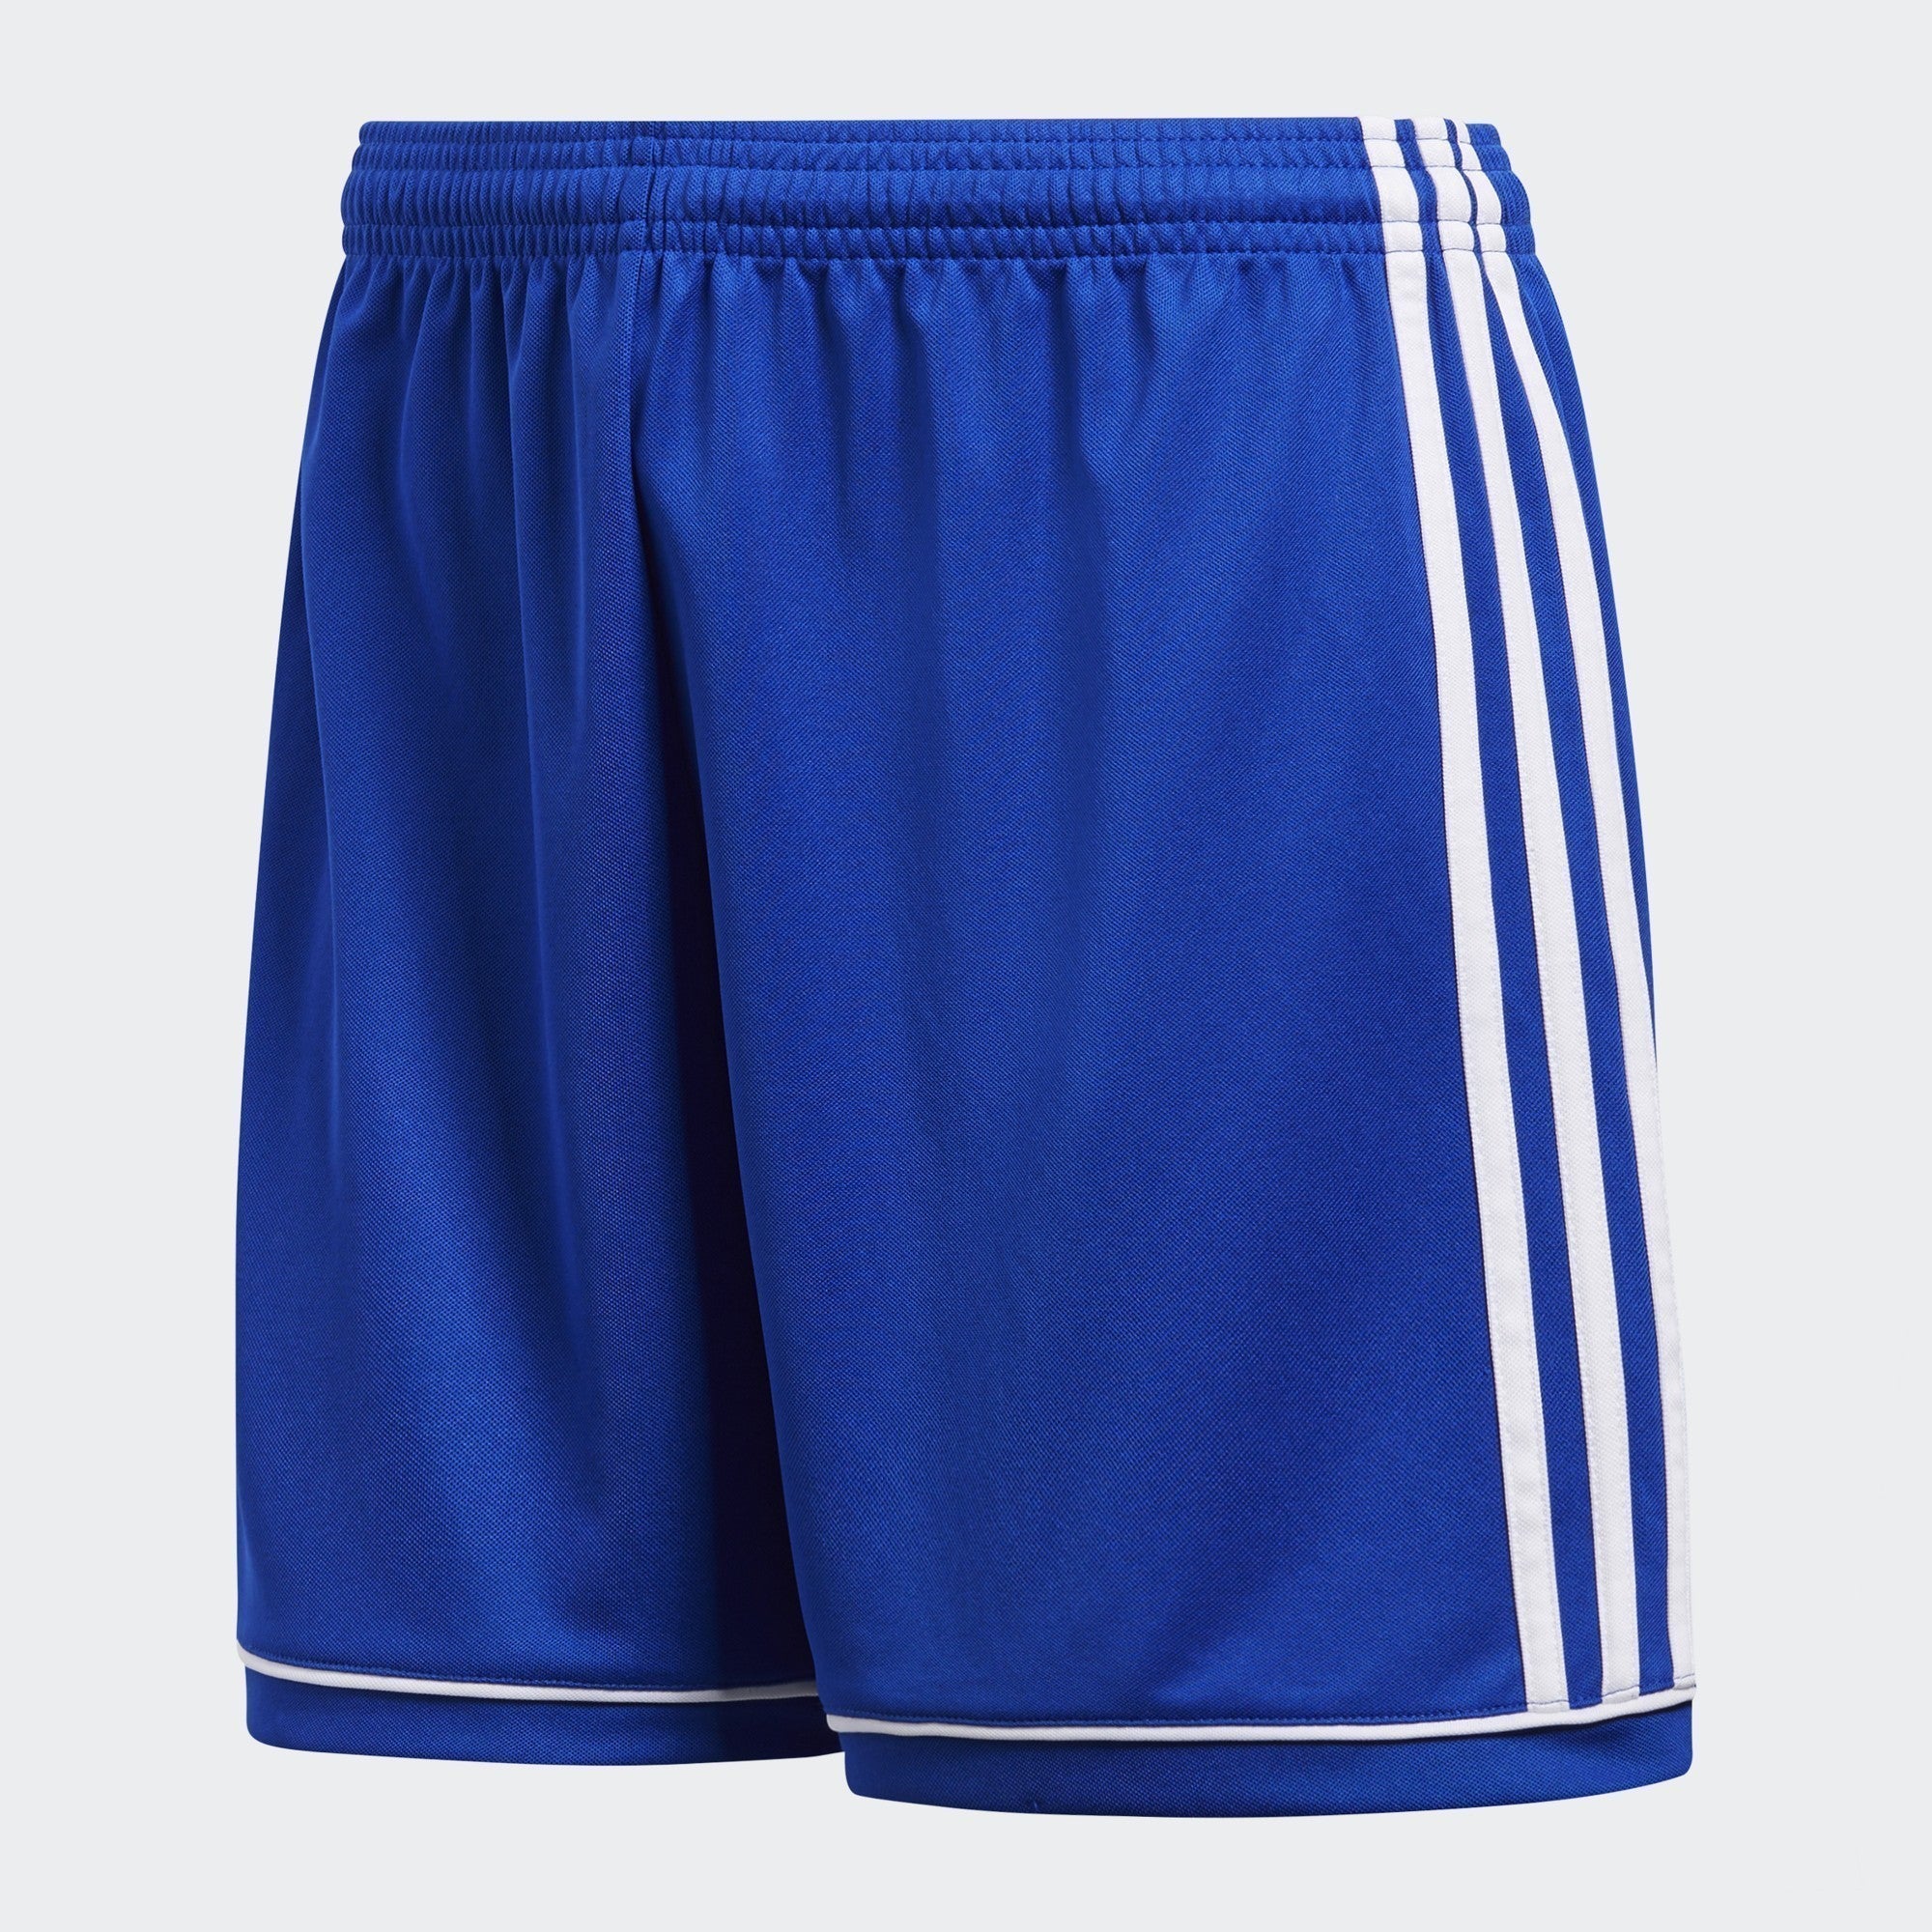 Squadra 17 Shorts - Bold Blue/White